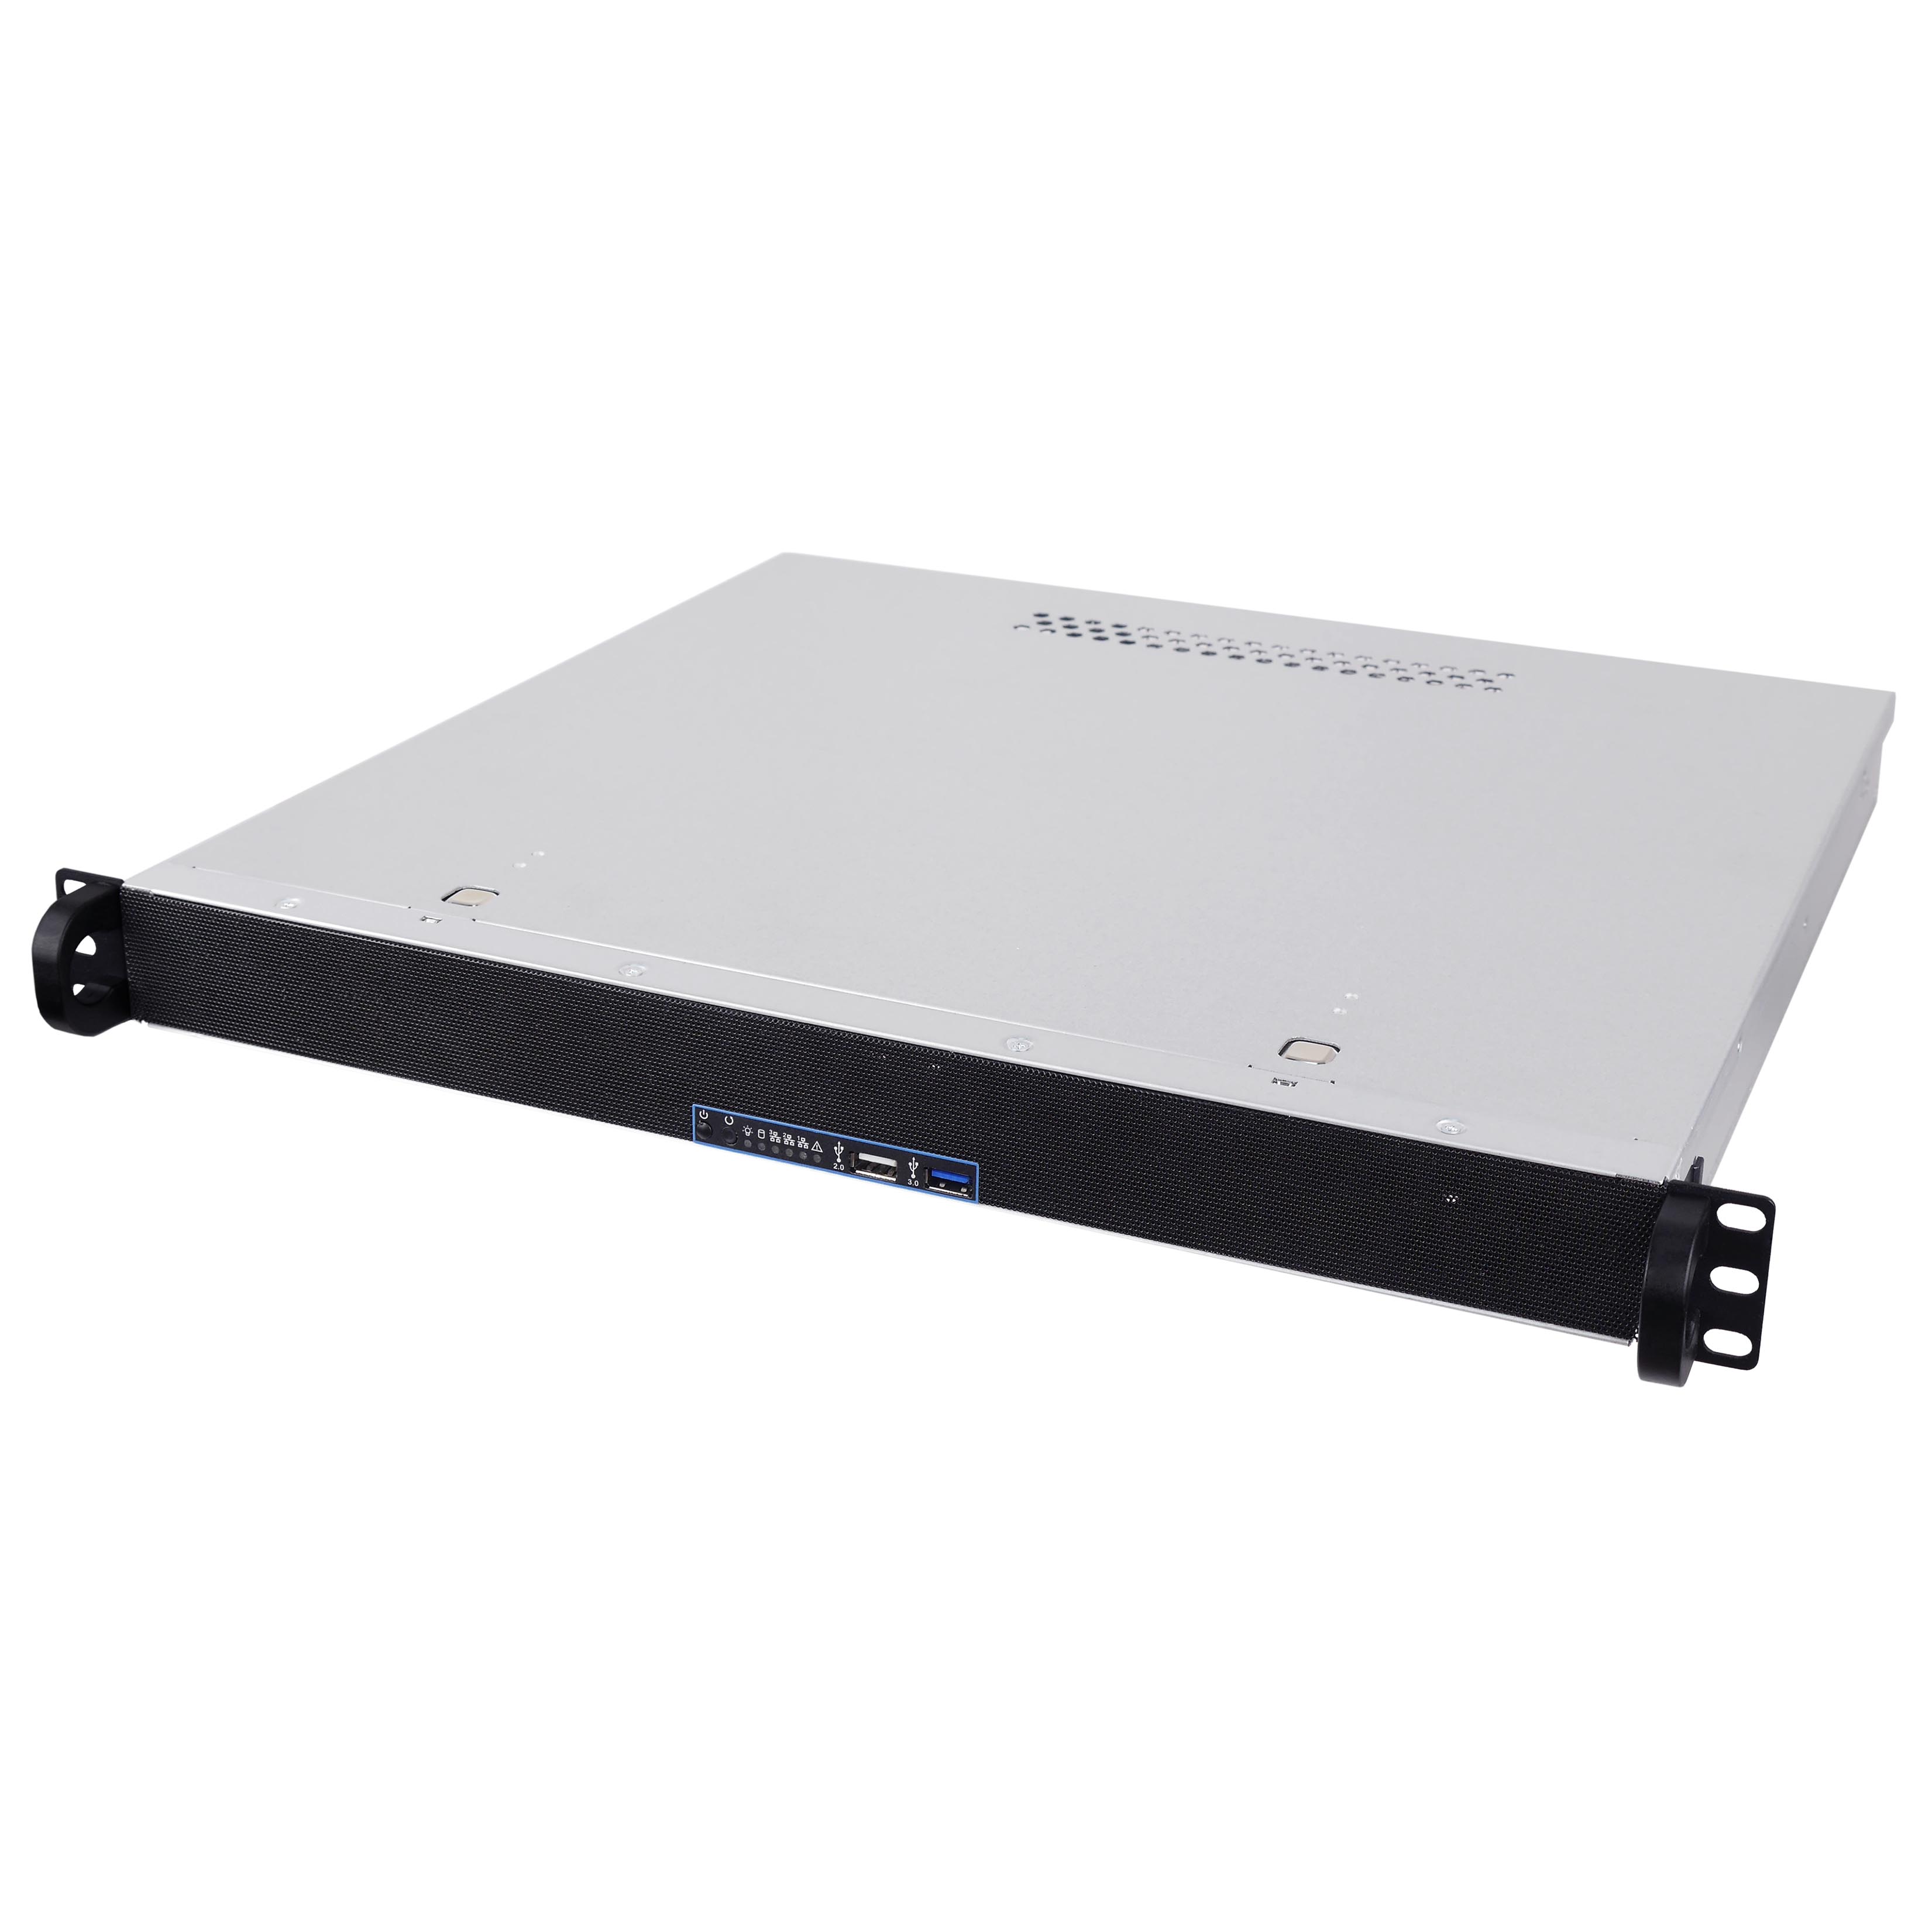 Серверный корпус 1U NR-D1390 (ATX 9.6x12, без Slim DVD, 2x3.5"int, 1x2.5"int, 390mm) черный